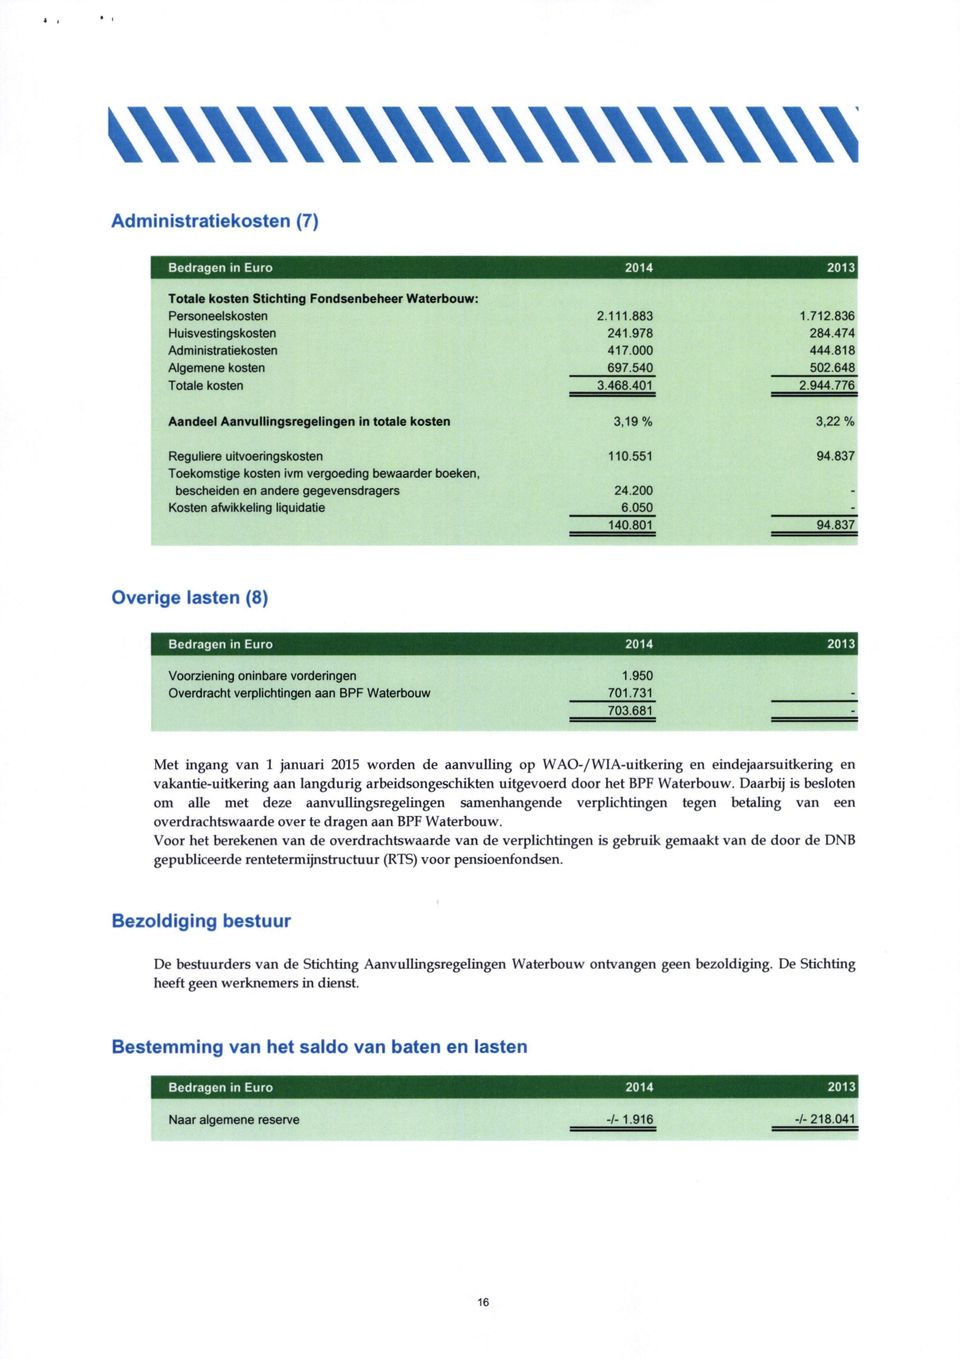 837 Toekomstige kosten ivm vergoeding bewaarder boeken, bescheiden en andere gegevensdragers 24.200 - Kosten afwikkeling liquidatie 6.050-140.